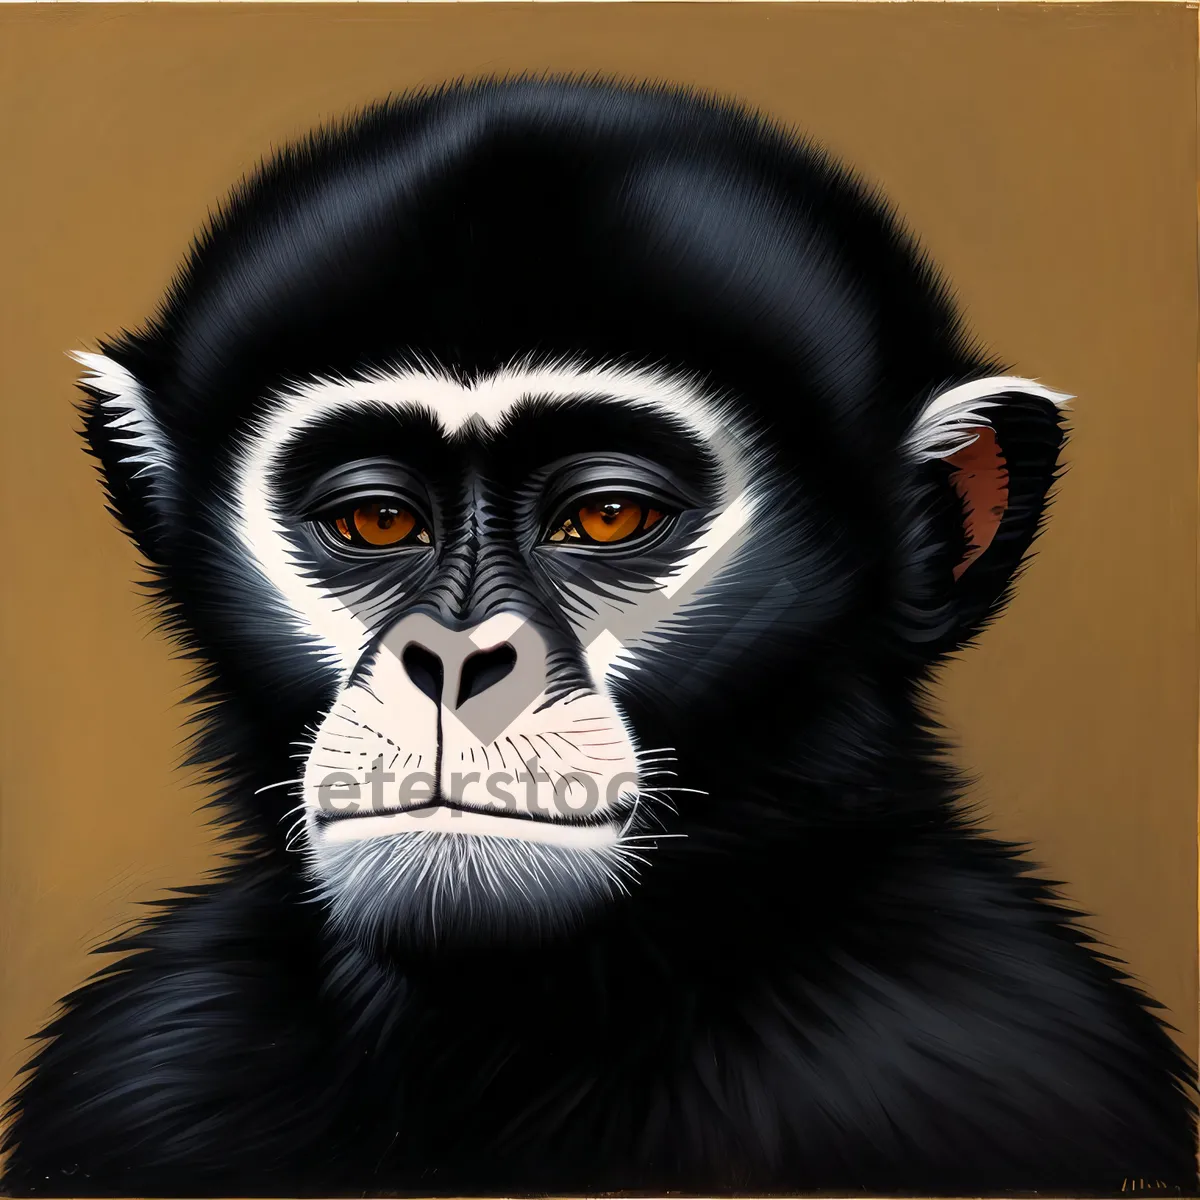 Picture of Wild Primate Sculpture: Captivating Ape in Wildlife